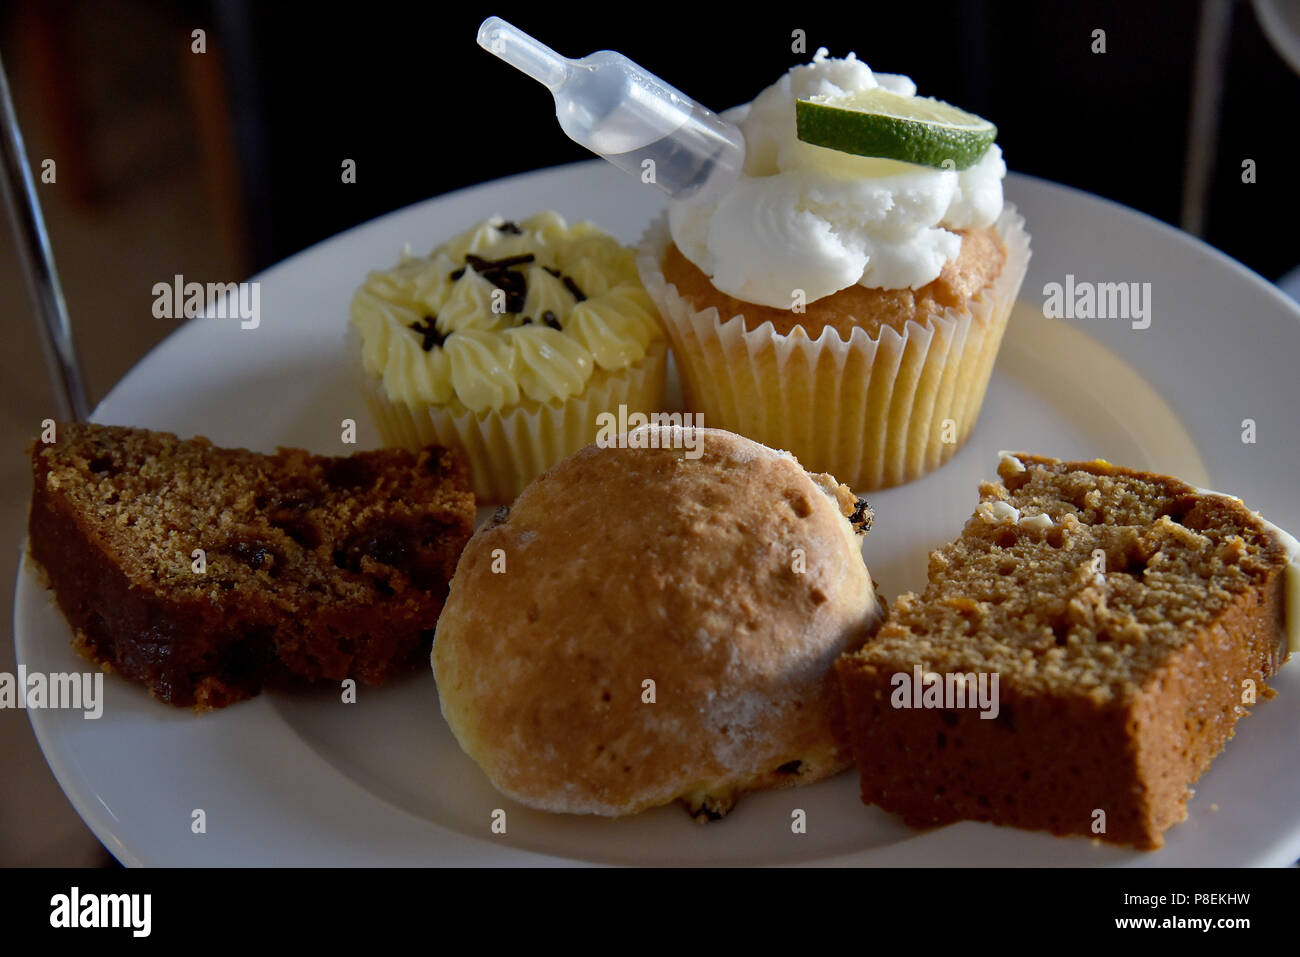 La figura mostra una torta stand contenente pasticcini includente un cup cake, un cornetto, data e noce e una fetta di torta di caffè Foto Stock